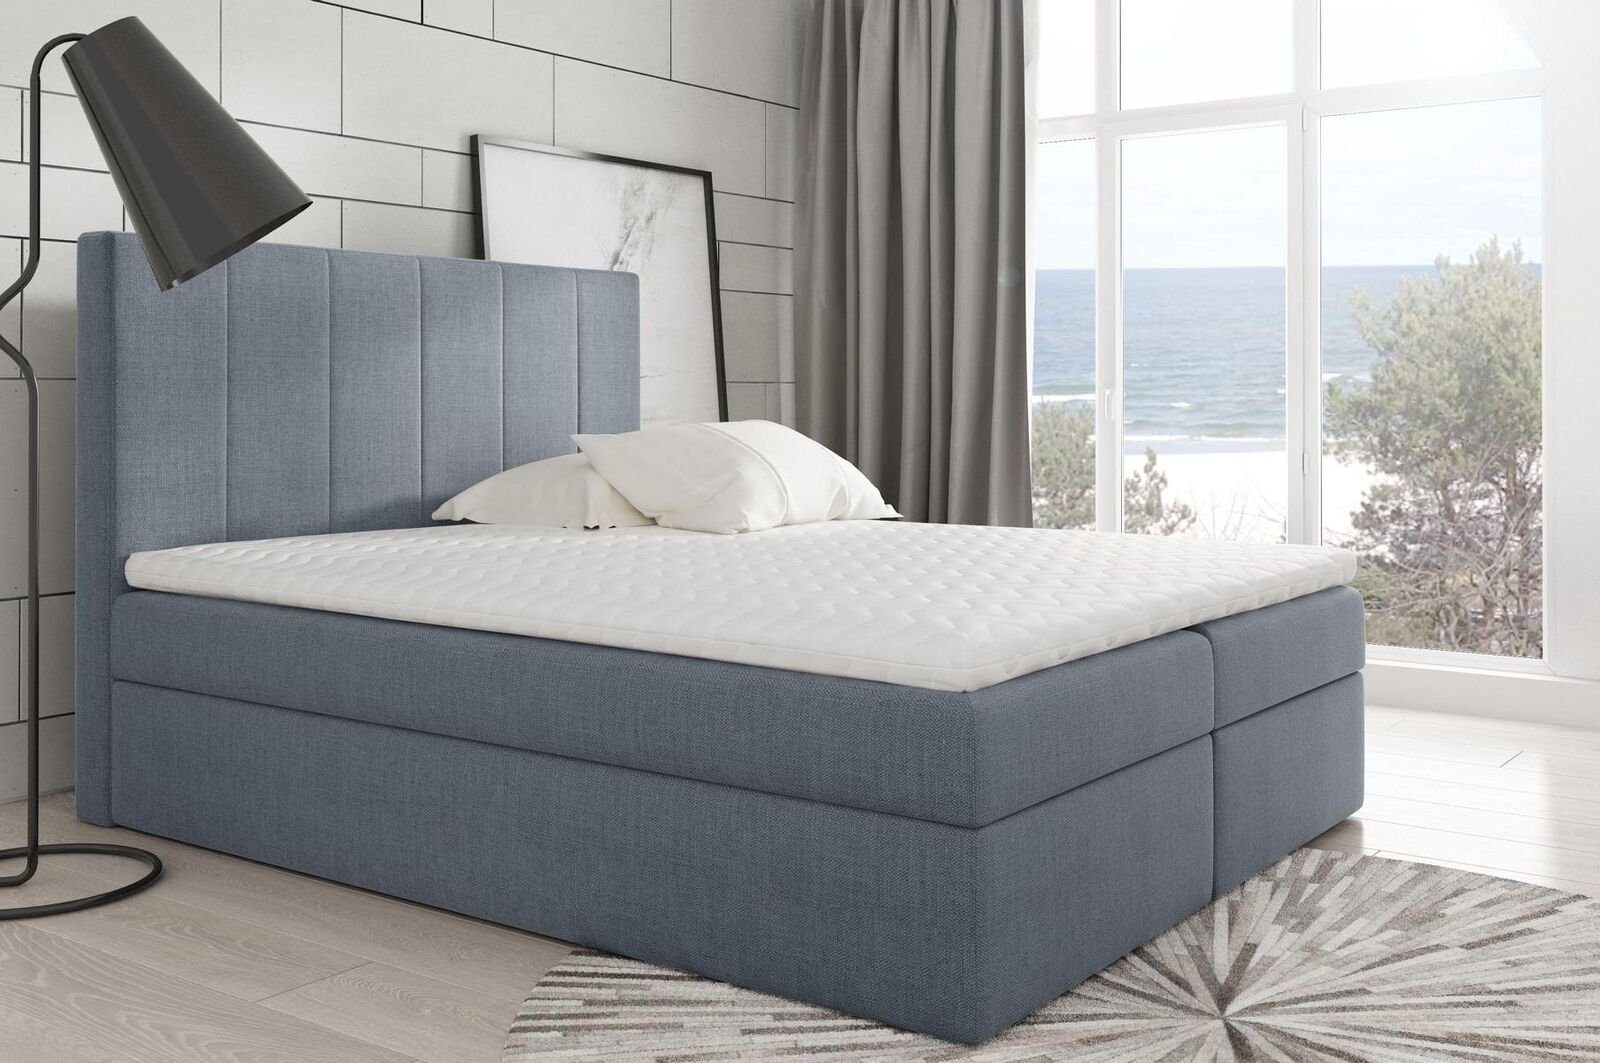 JVmoebel Bett, Schlafzimmer Silber Modernes Boxspringbett Betten Stoff Textil Bett Design